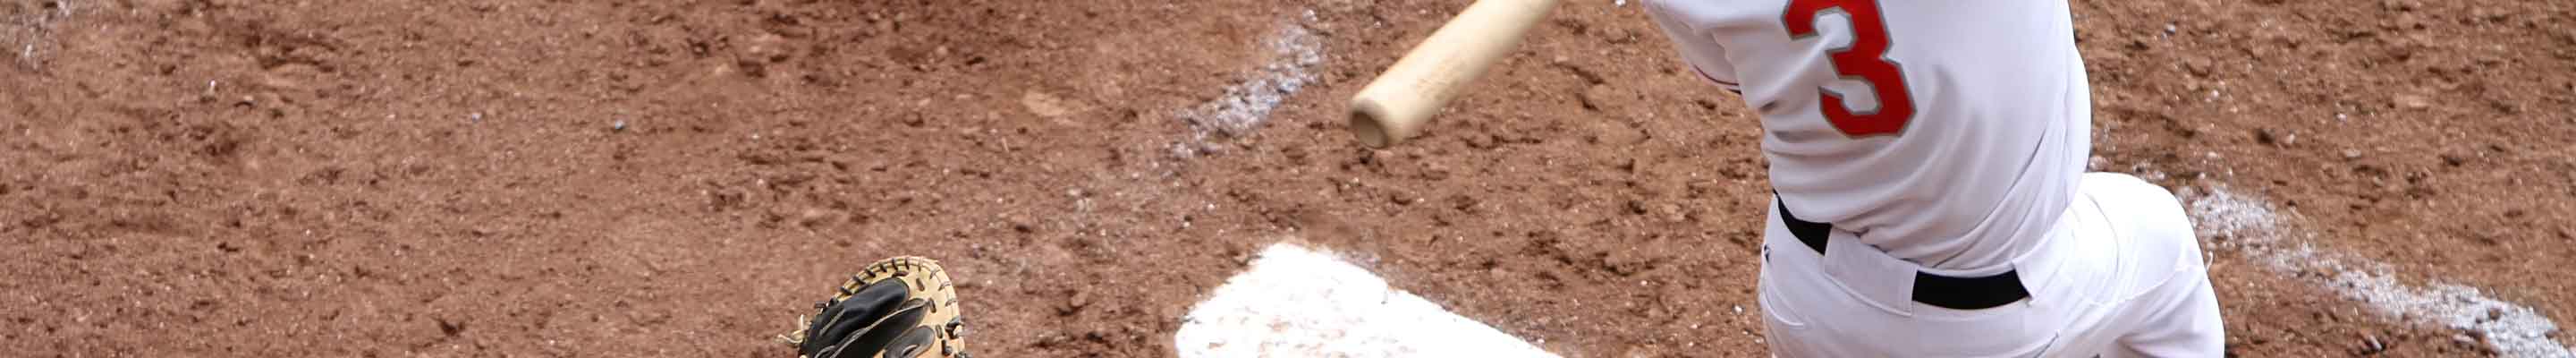 Tournaments Baseball Great Bend Rec Top 